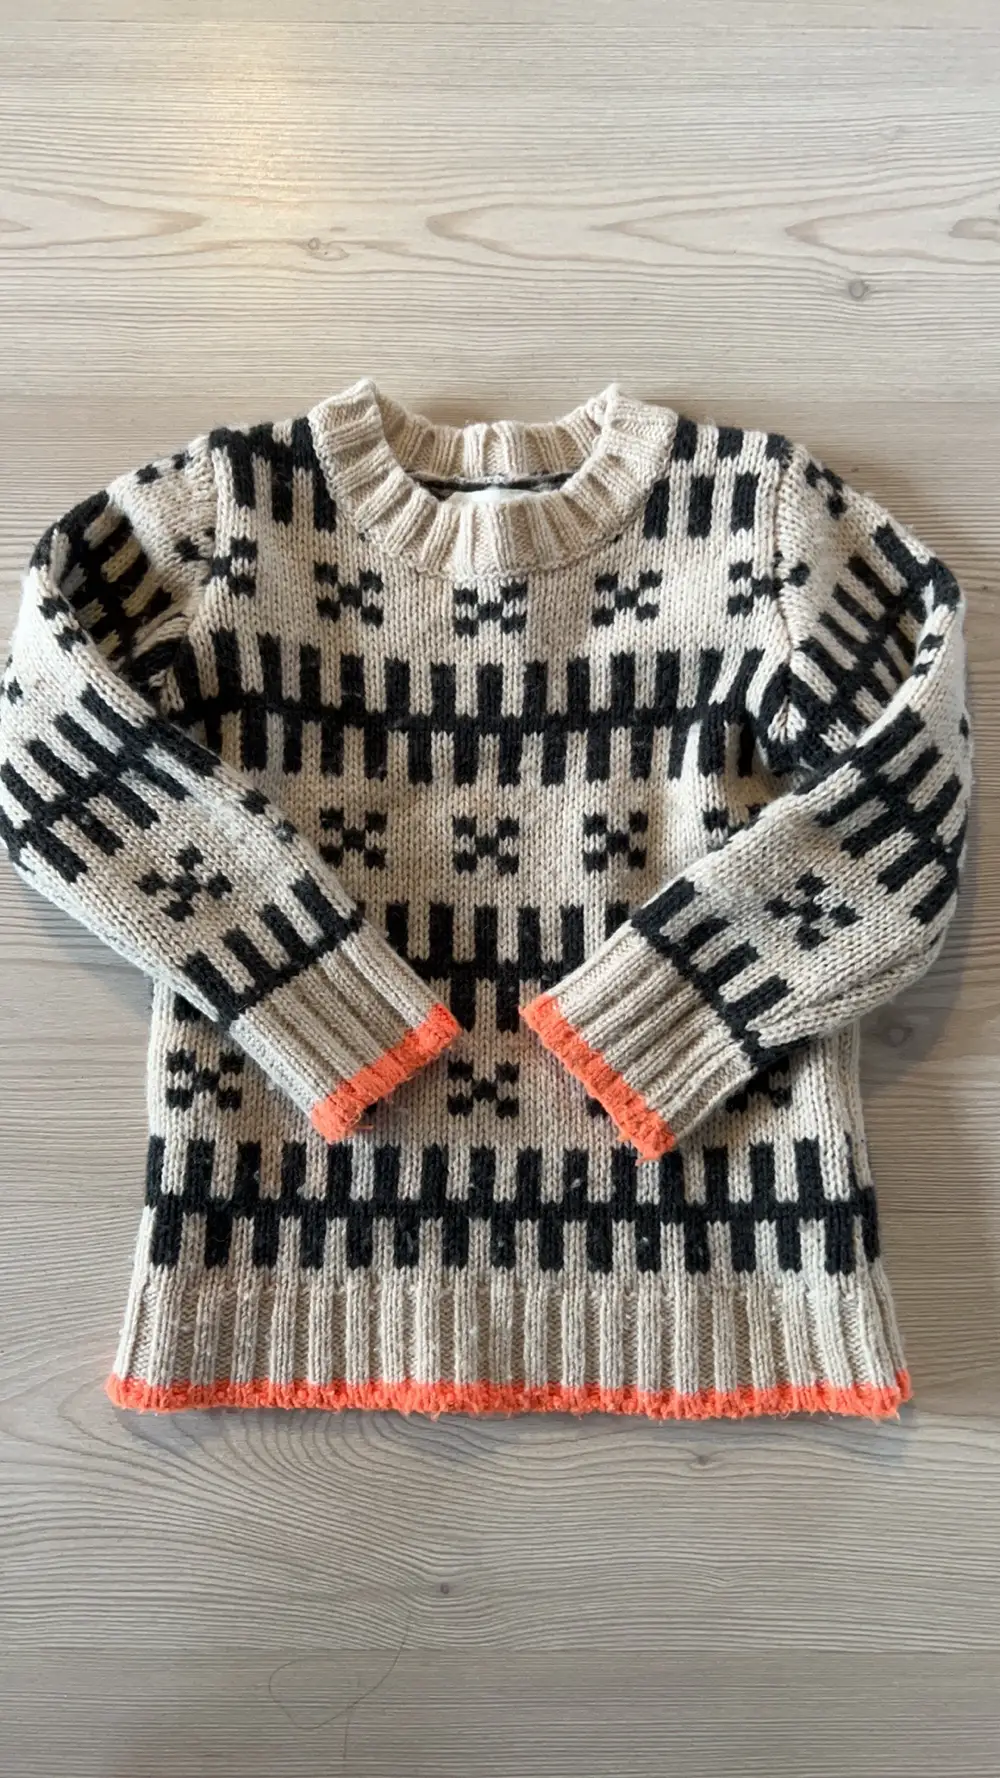 Køb Mads Nørgaard Uld trøje i 116 af Pernille på Reshopper · Shop secondhand børn, mor og bolig